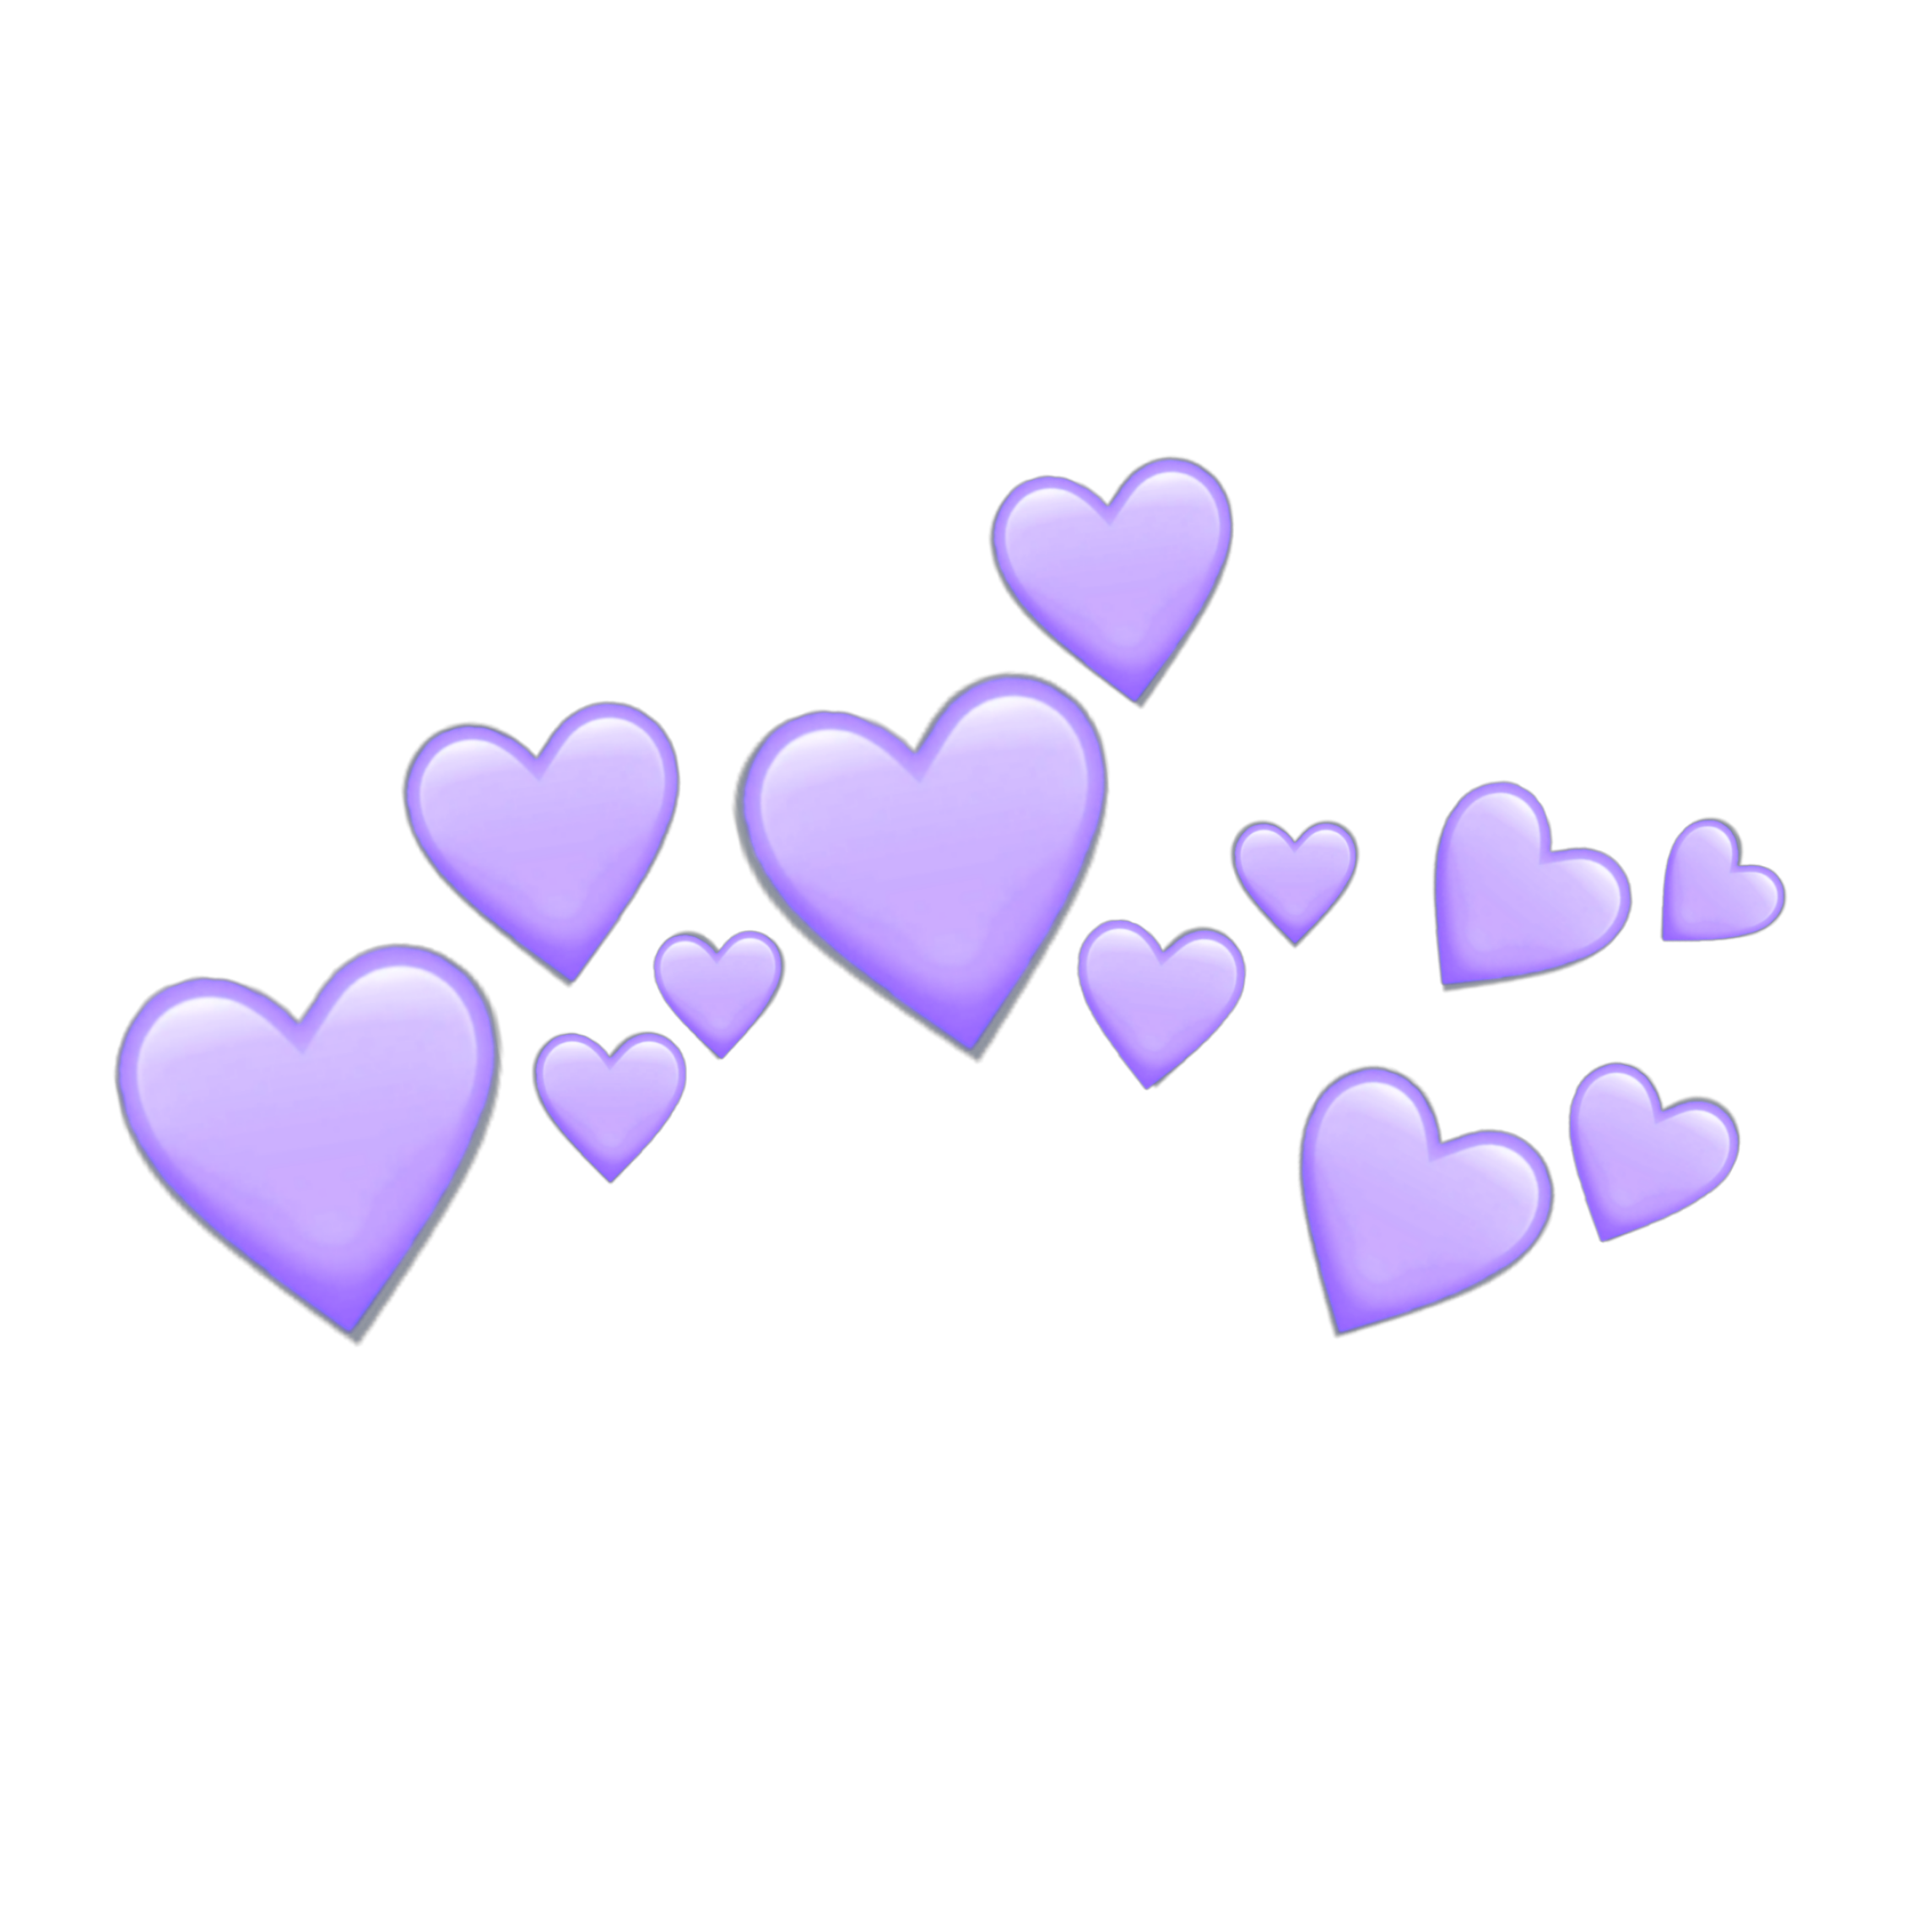 purple hearts heart purpleheart crown sticker by @snmyart.